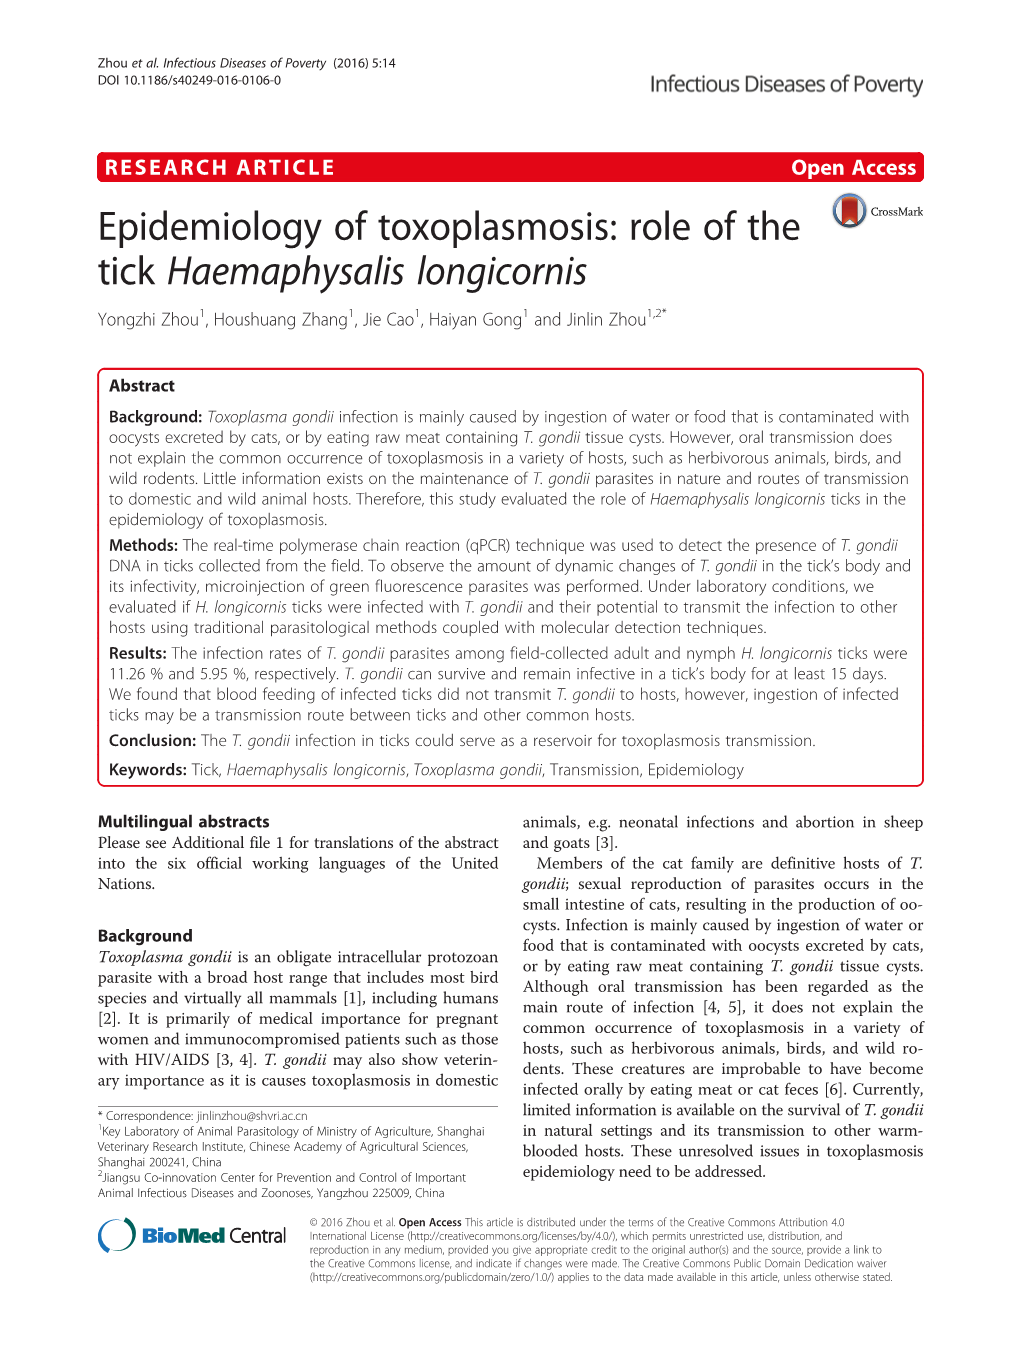 Epidemiology of Toxoplasmosis: Role of the Tick Haemaphysalis Longicornis Yongzhi Zhou1, Houshuang Zhang1, Jie Cao1, Haiyan Gong1 and Jinlin Zhou1,2*